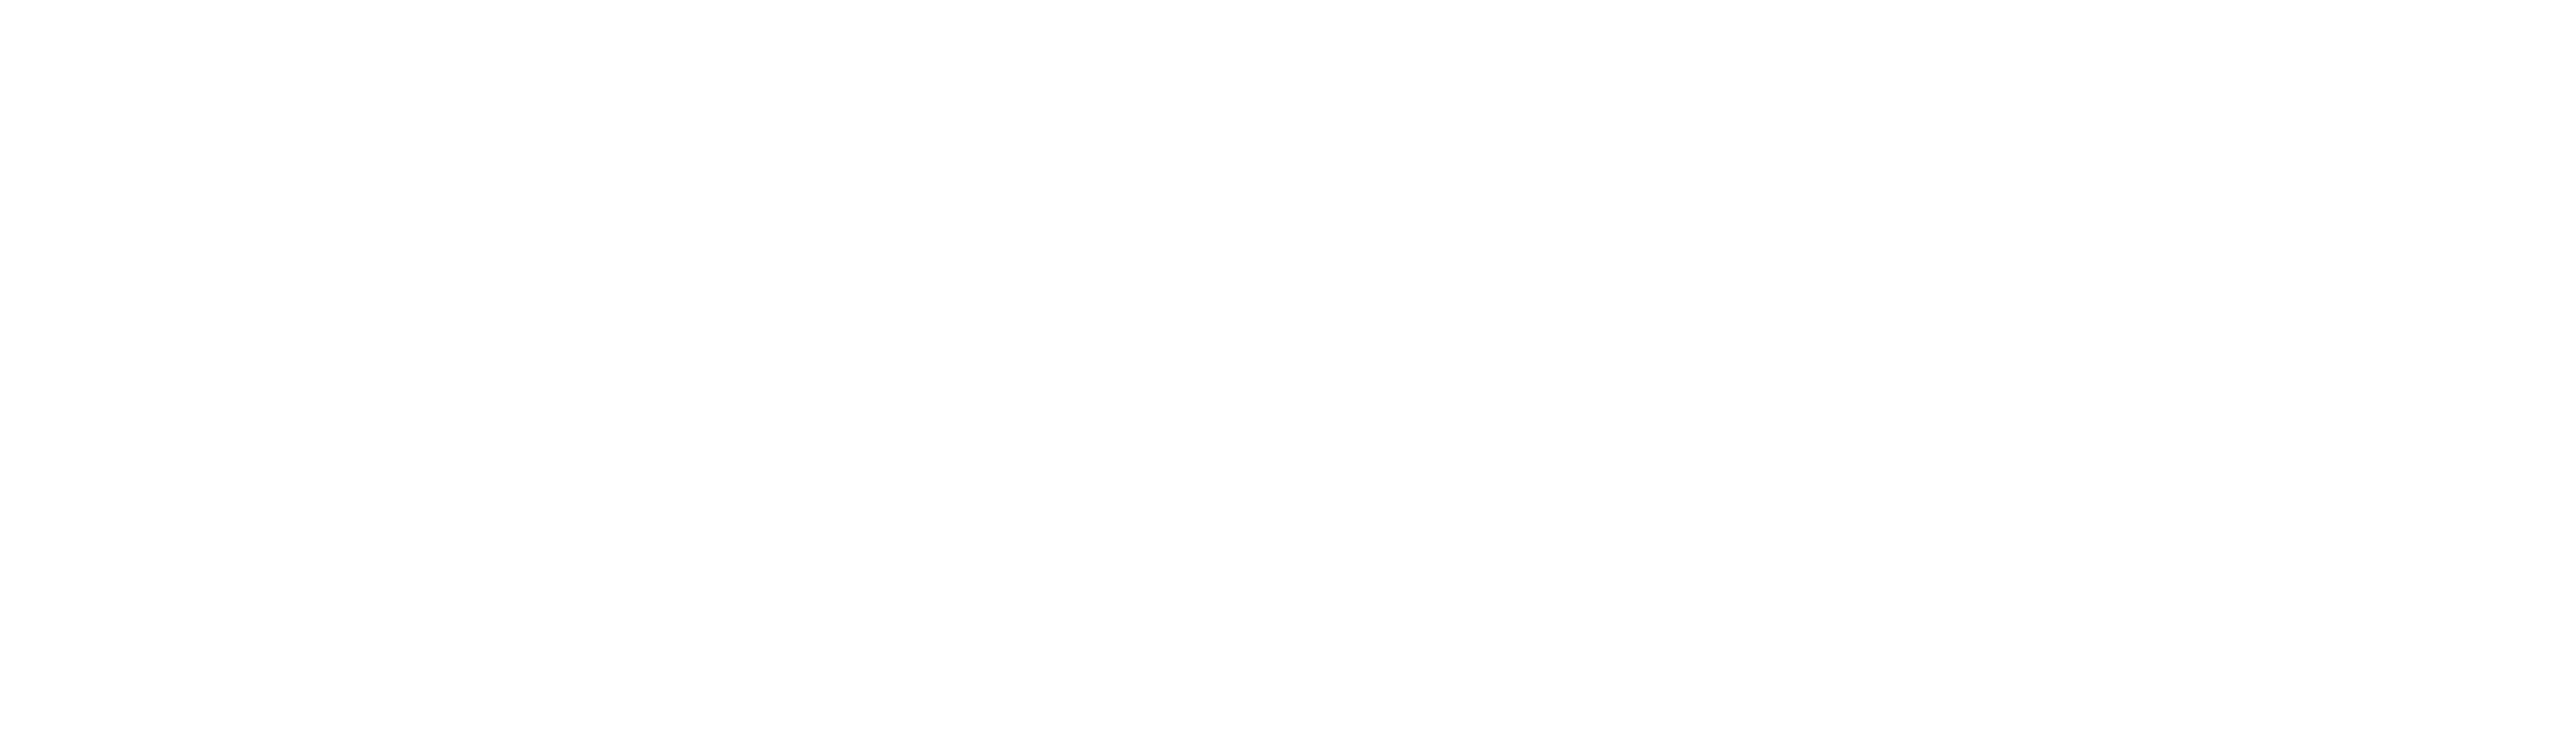 Ript- Jersey City (Med) logo